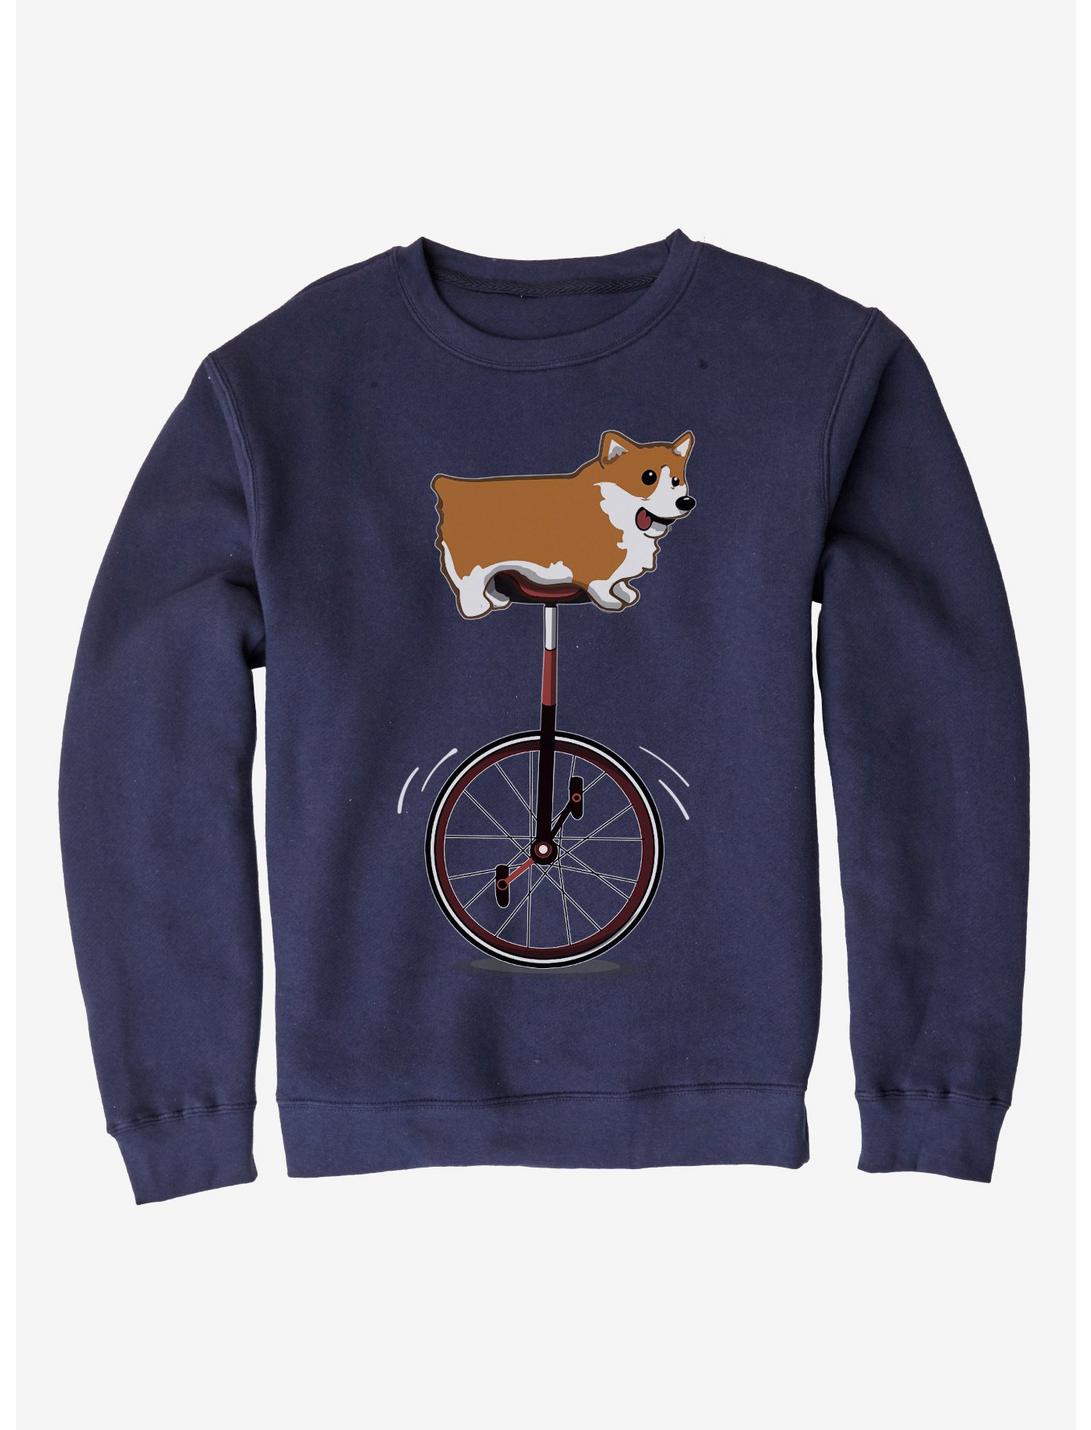 Unicycle Corgi Sweatshirt, NAVY, hi-res